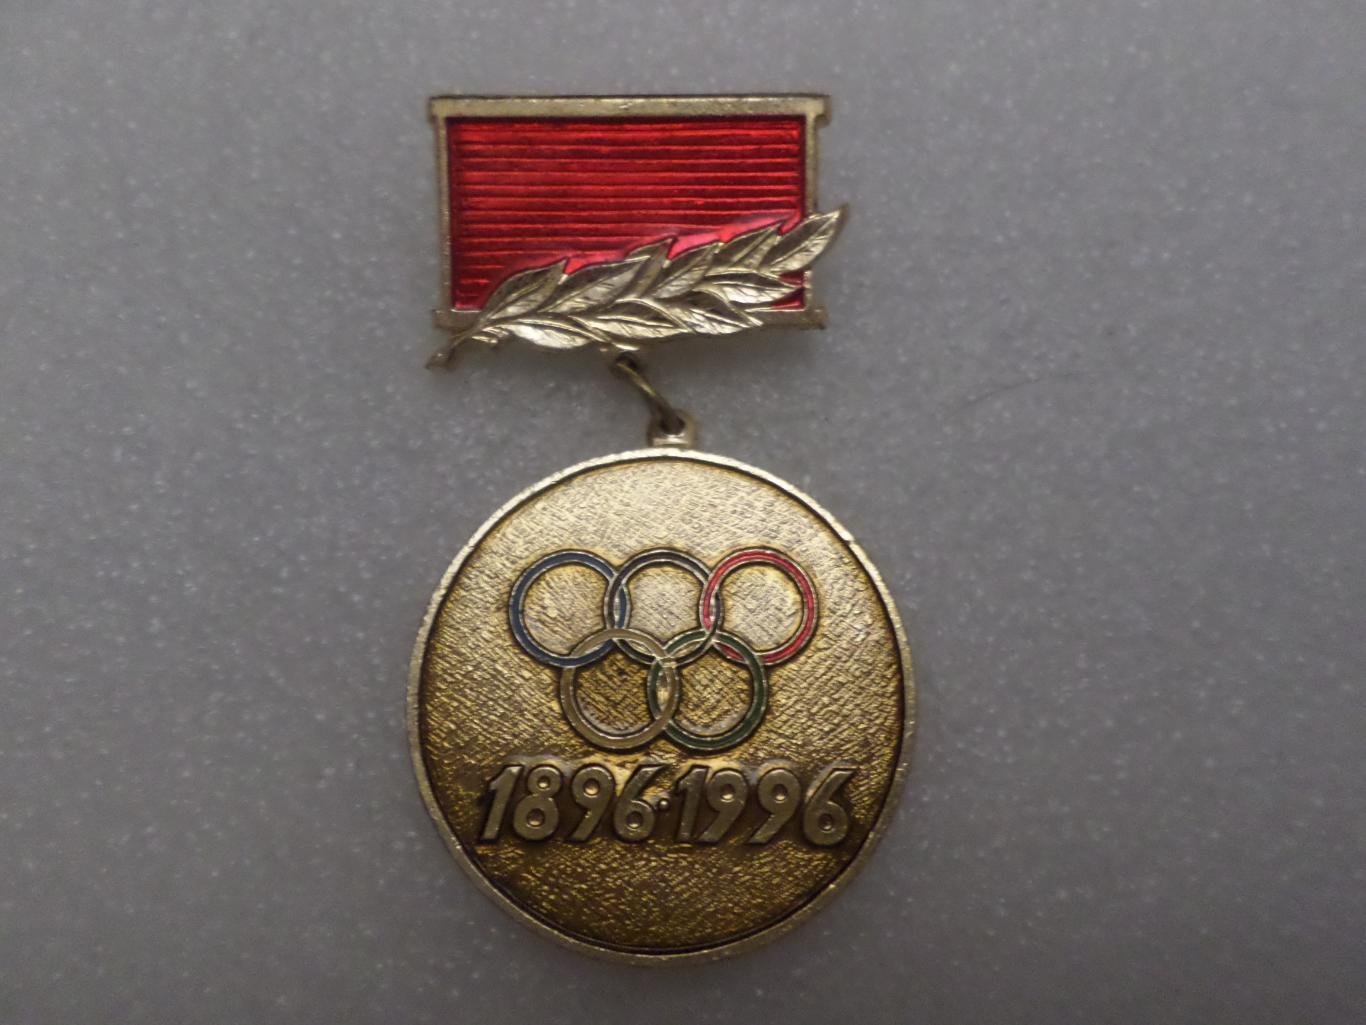 Знак Юбилейная олимпийская медаль1896-1996 г столетие олимпийских игр